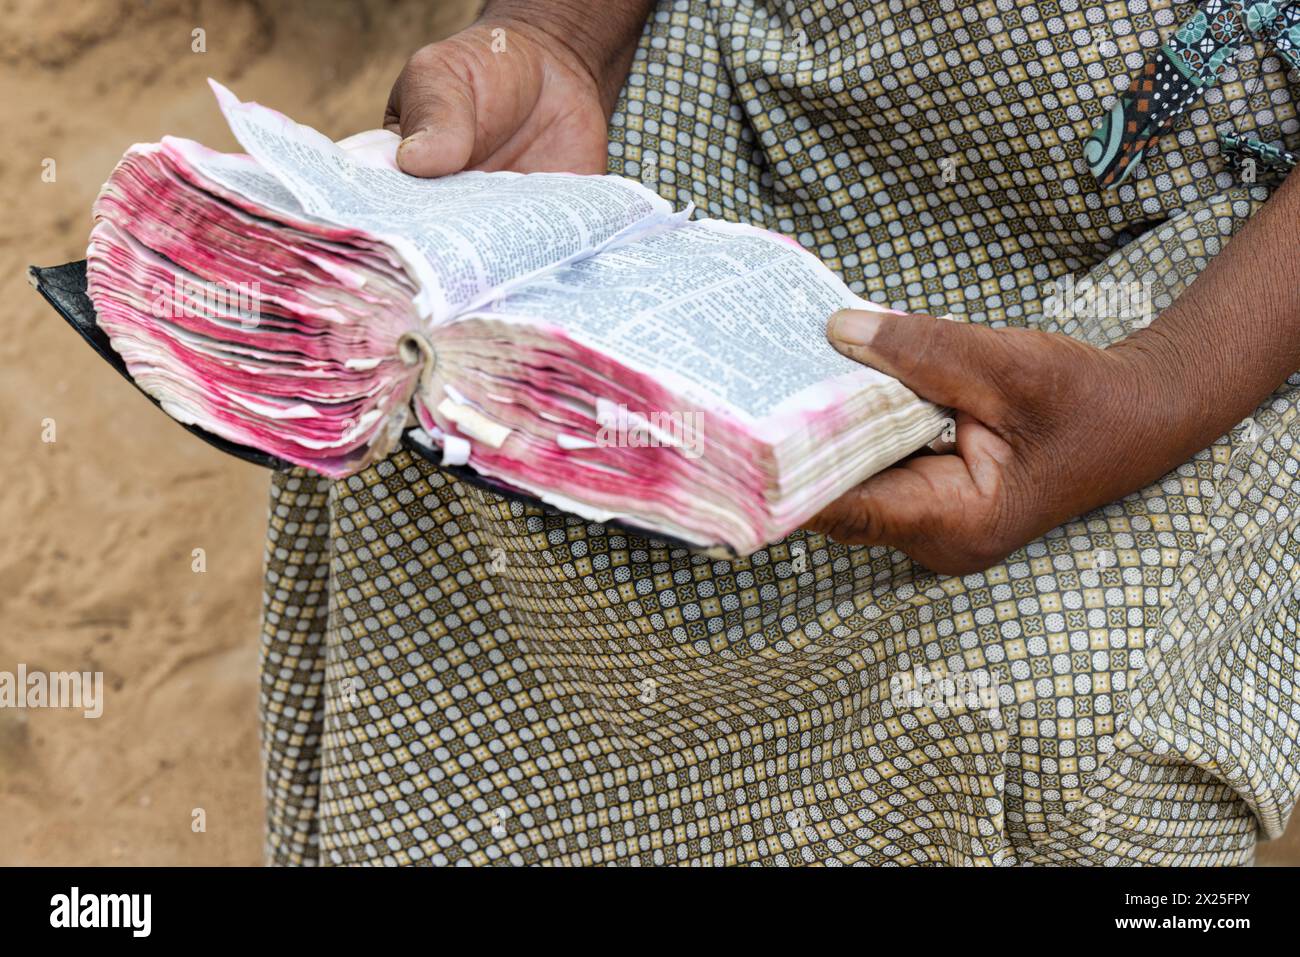 Vecchia donna africana cristiana del villaggio, che legge un libro sacro della bibbia, vestito casual Foto Stock